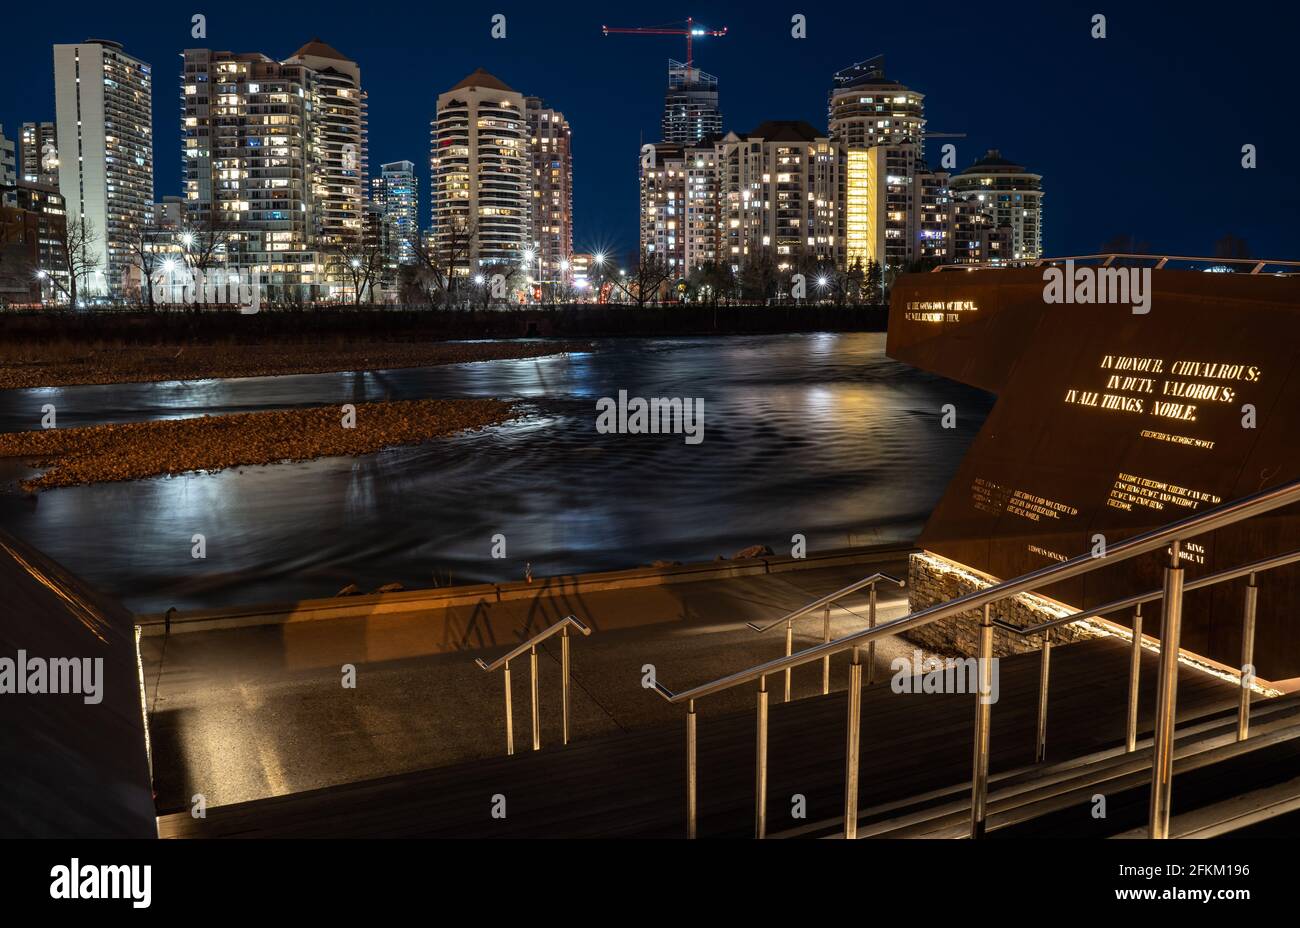 Calgary Alberta Canada, 1er mai 2021 : exposition d'art public sur le front de mer de Memorial Drive surplombant la rivière Bow et le centre-ville de Calgary. Banque D'Images